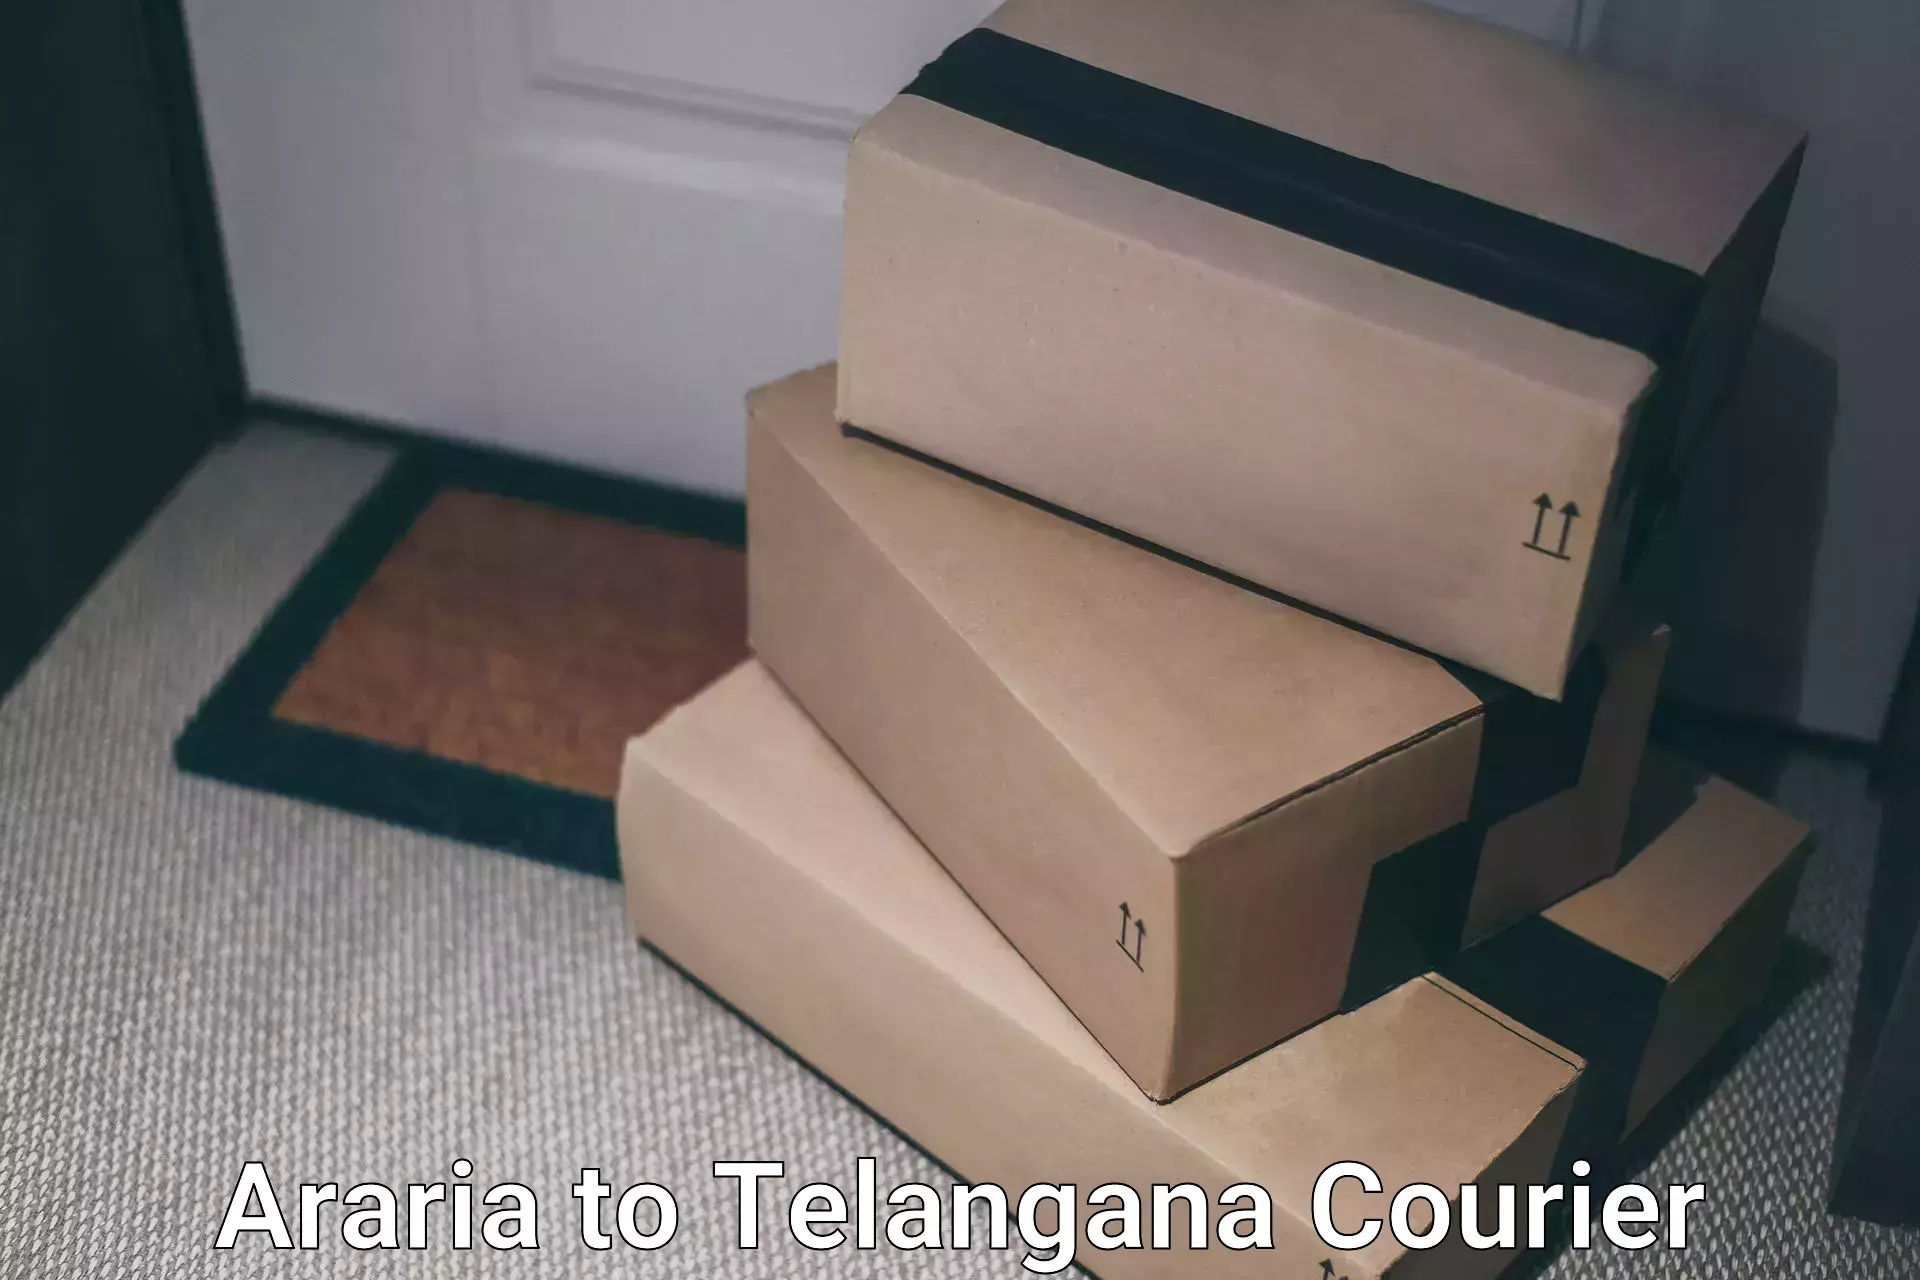 Reliable courier service Araria to Aswaraopeta